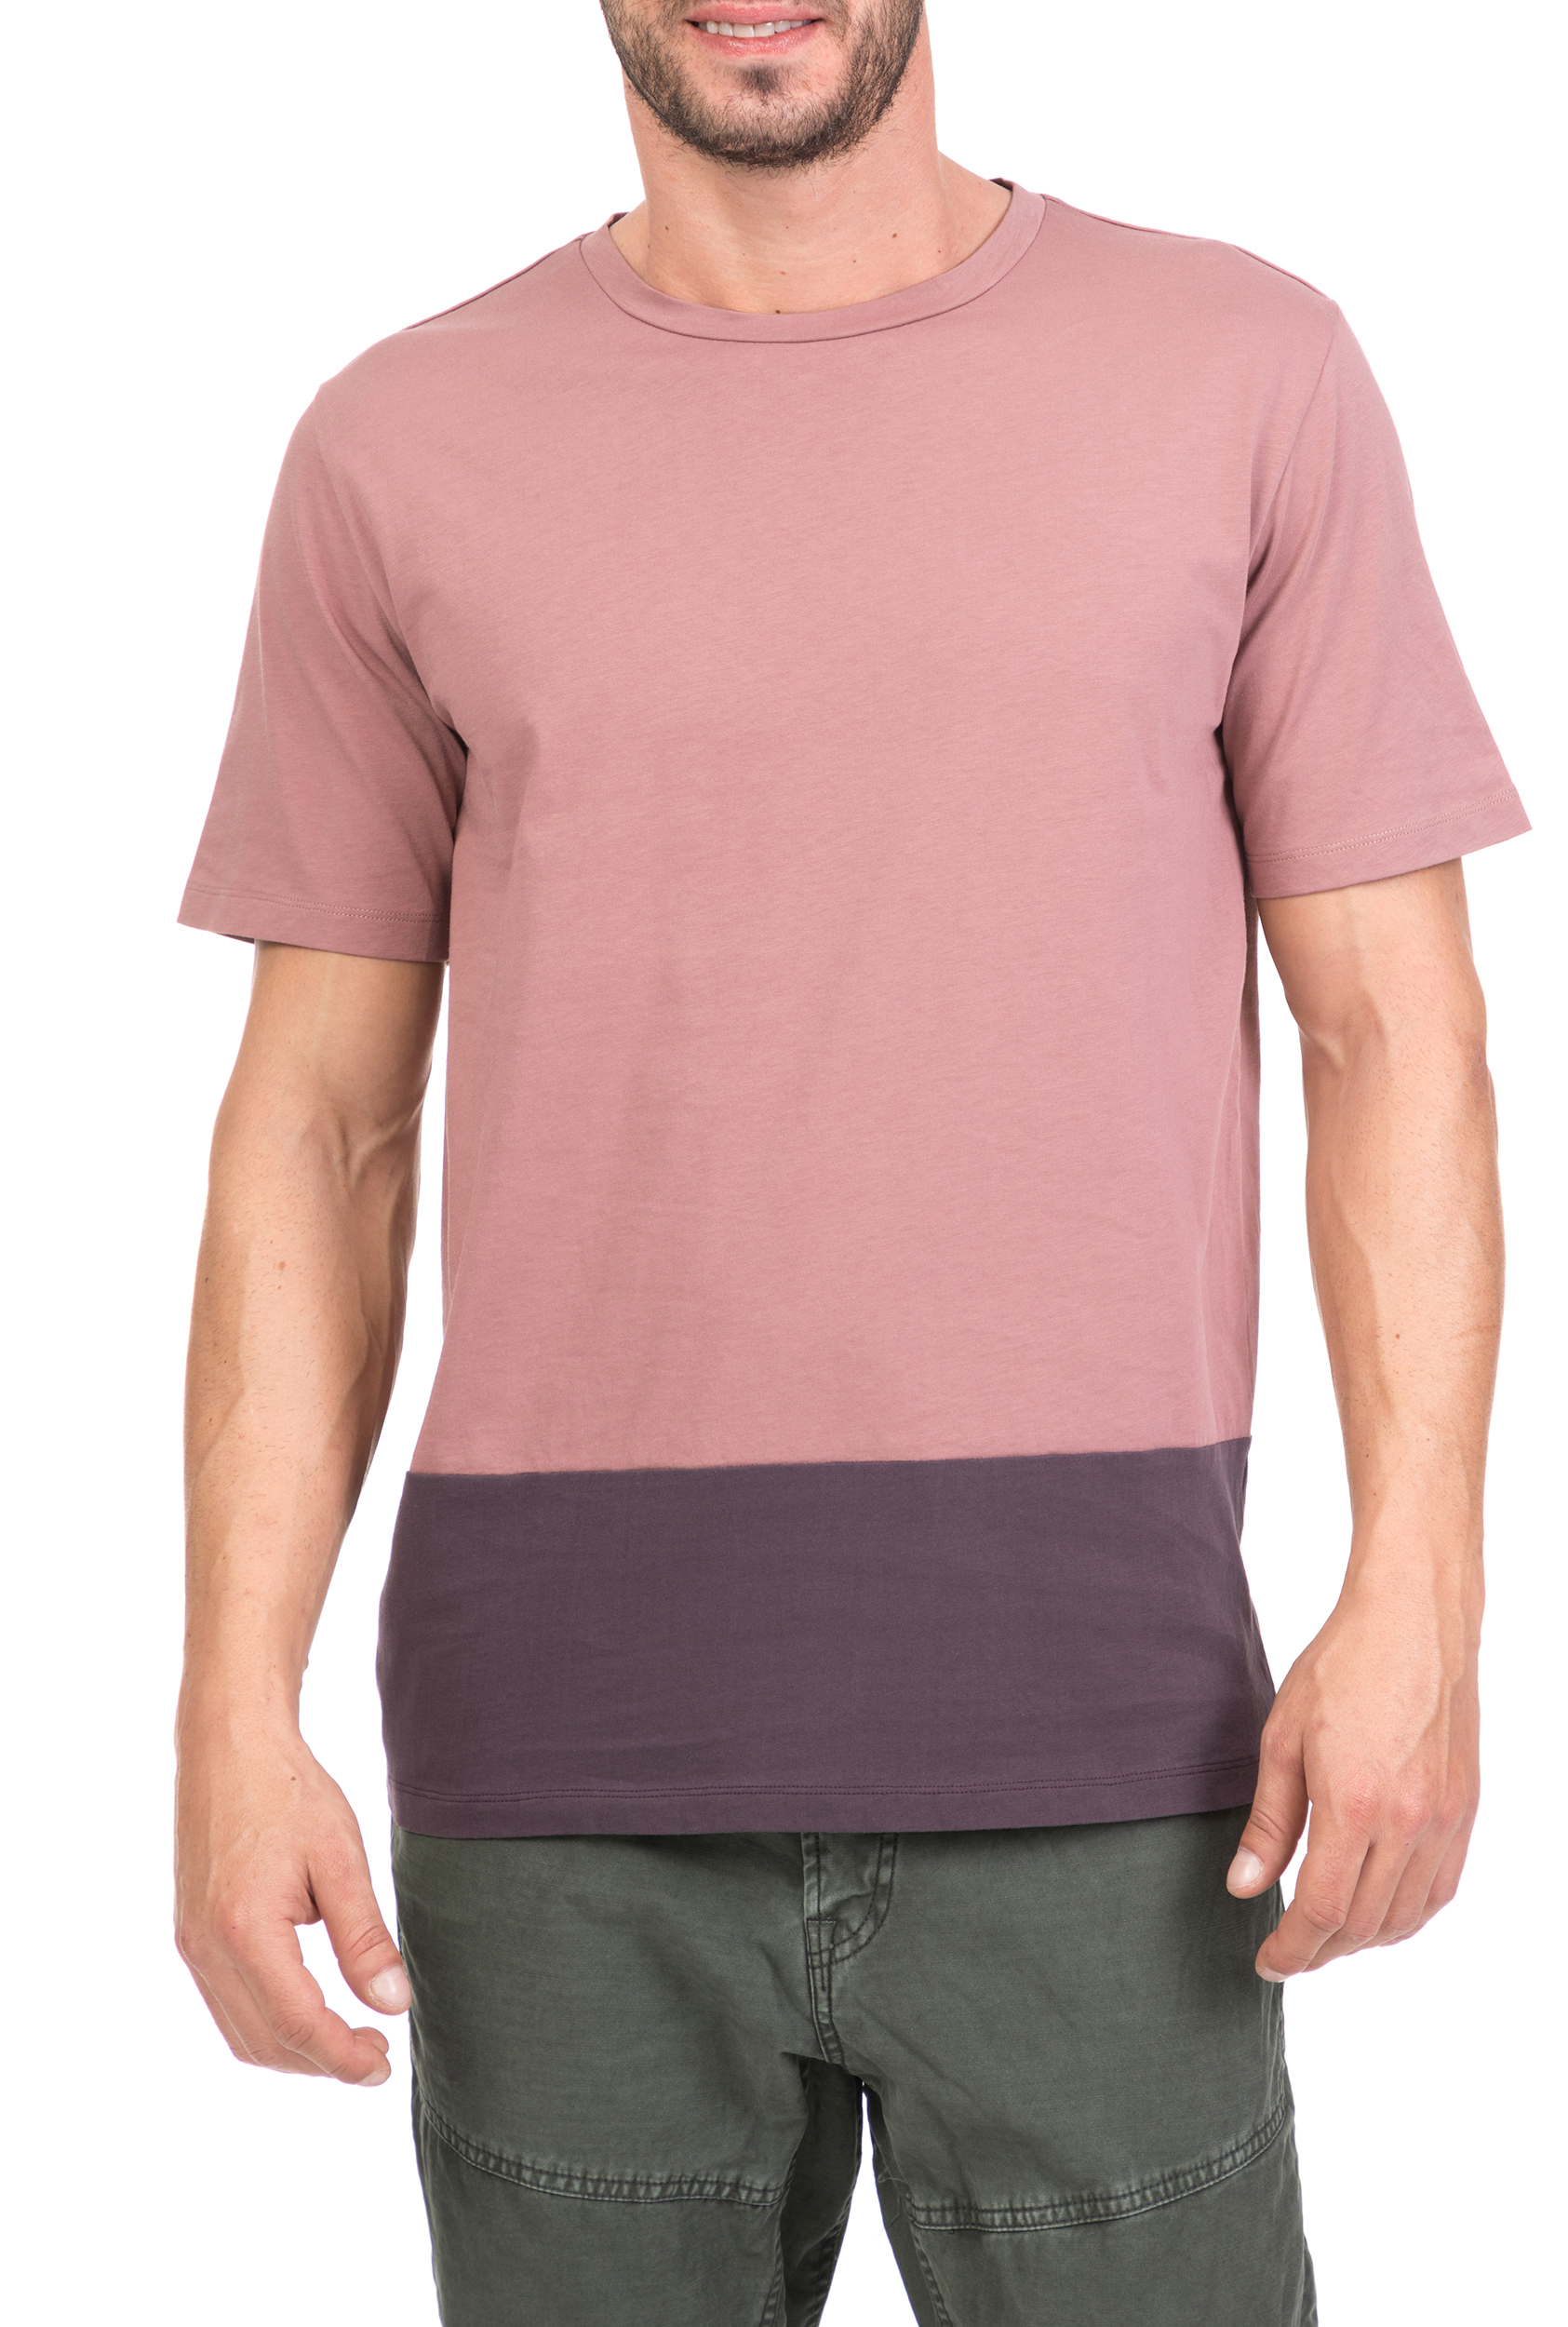 Ανδρικά/Ρούχα/Μπλούζες/Κοντομάνικες THE PROJECT GARMENTS - Ανδρική κοντομάνικη μπλούζα THE PROJECT GARMENTS ροζ-μοβ